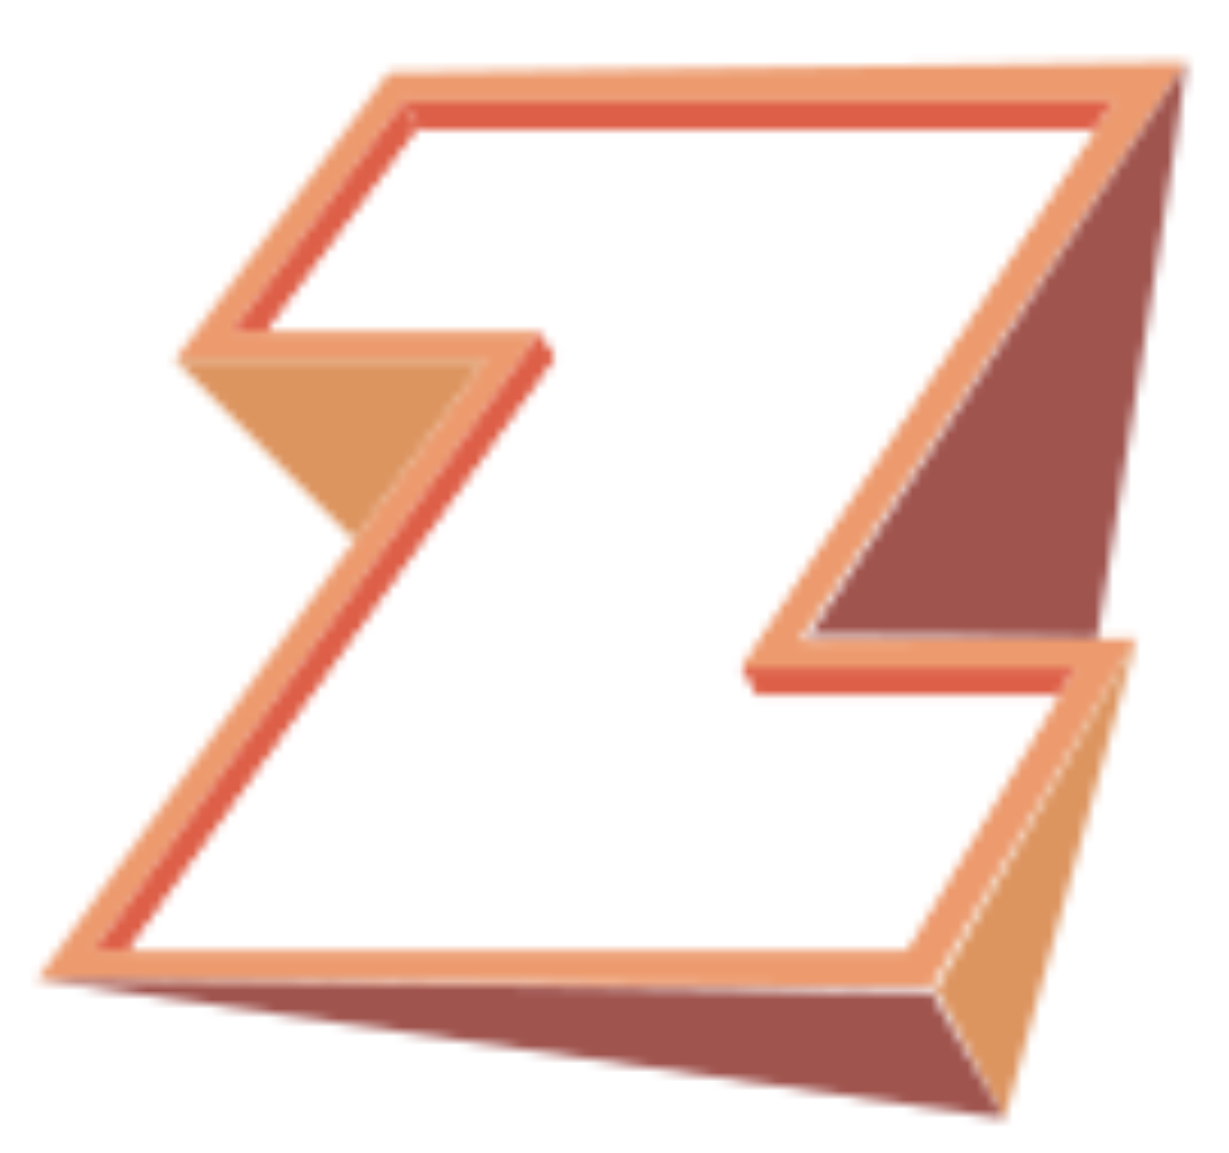 Artizyou logo